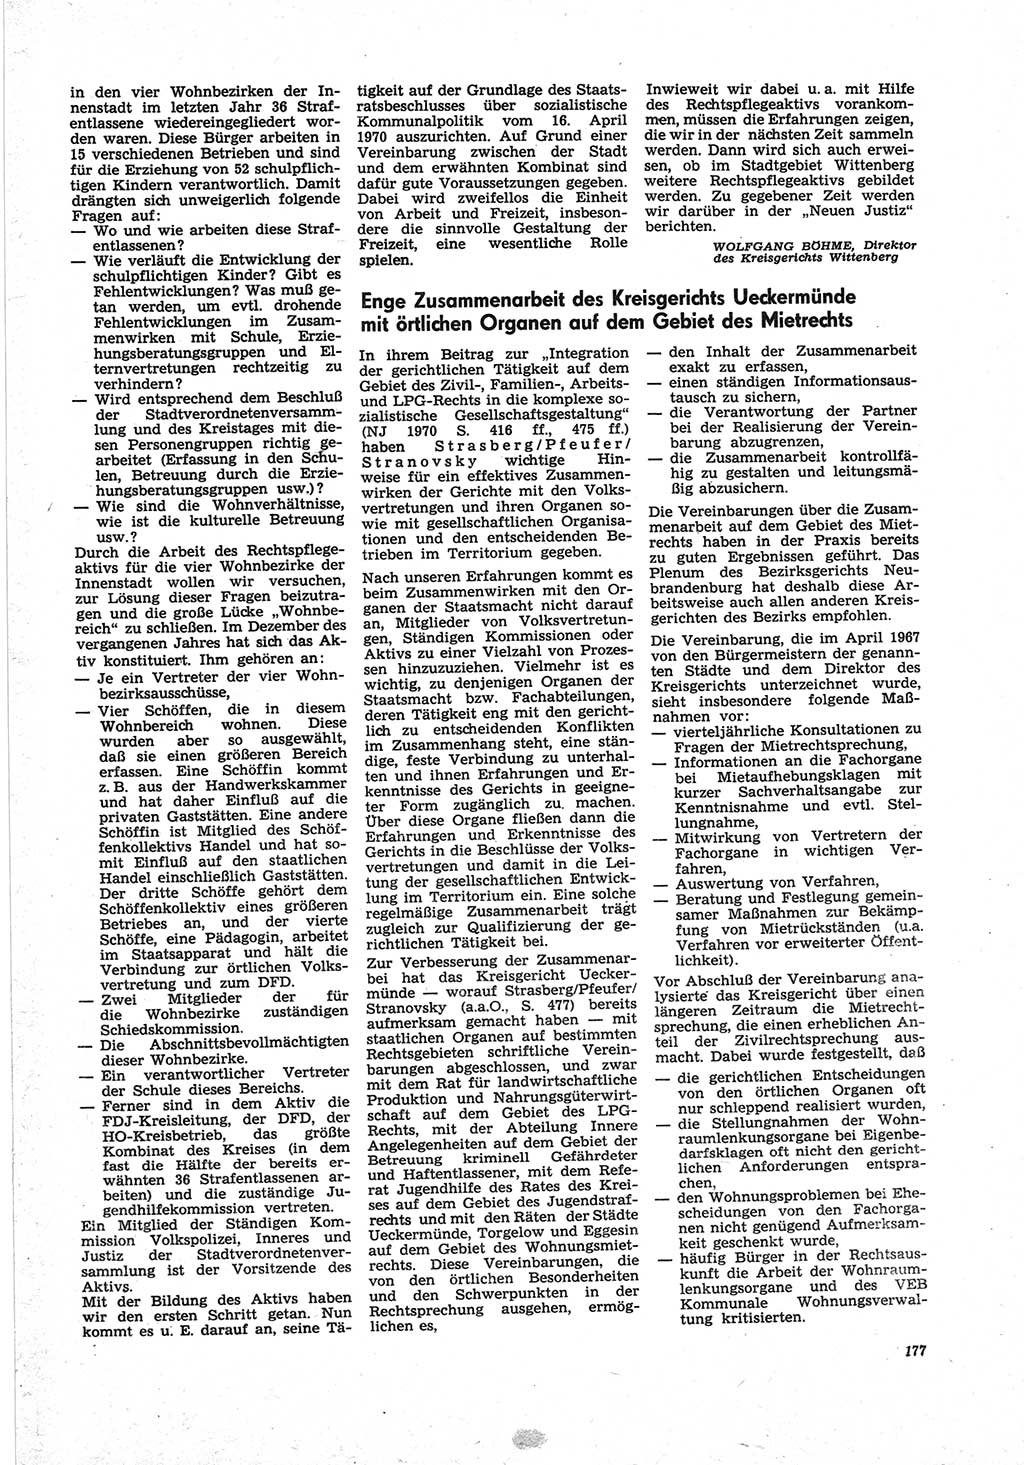 Neue Justiz (NJ), Zeitschrift für Recht und Rechtswissenschaft [Deutsche Demokratische Republik (DDR)], 25. Jahrgang 1971, Seite 177 (NJ DDR 1971, S. 177)